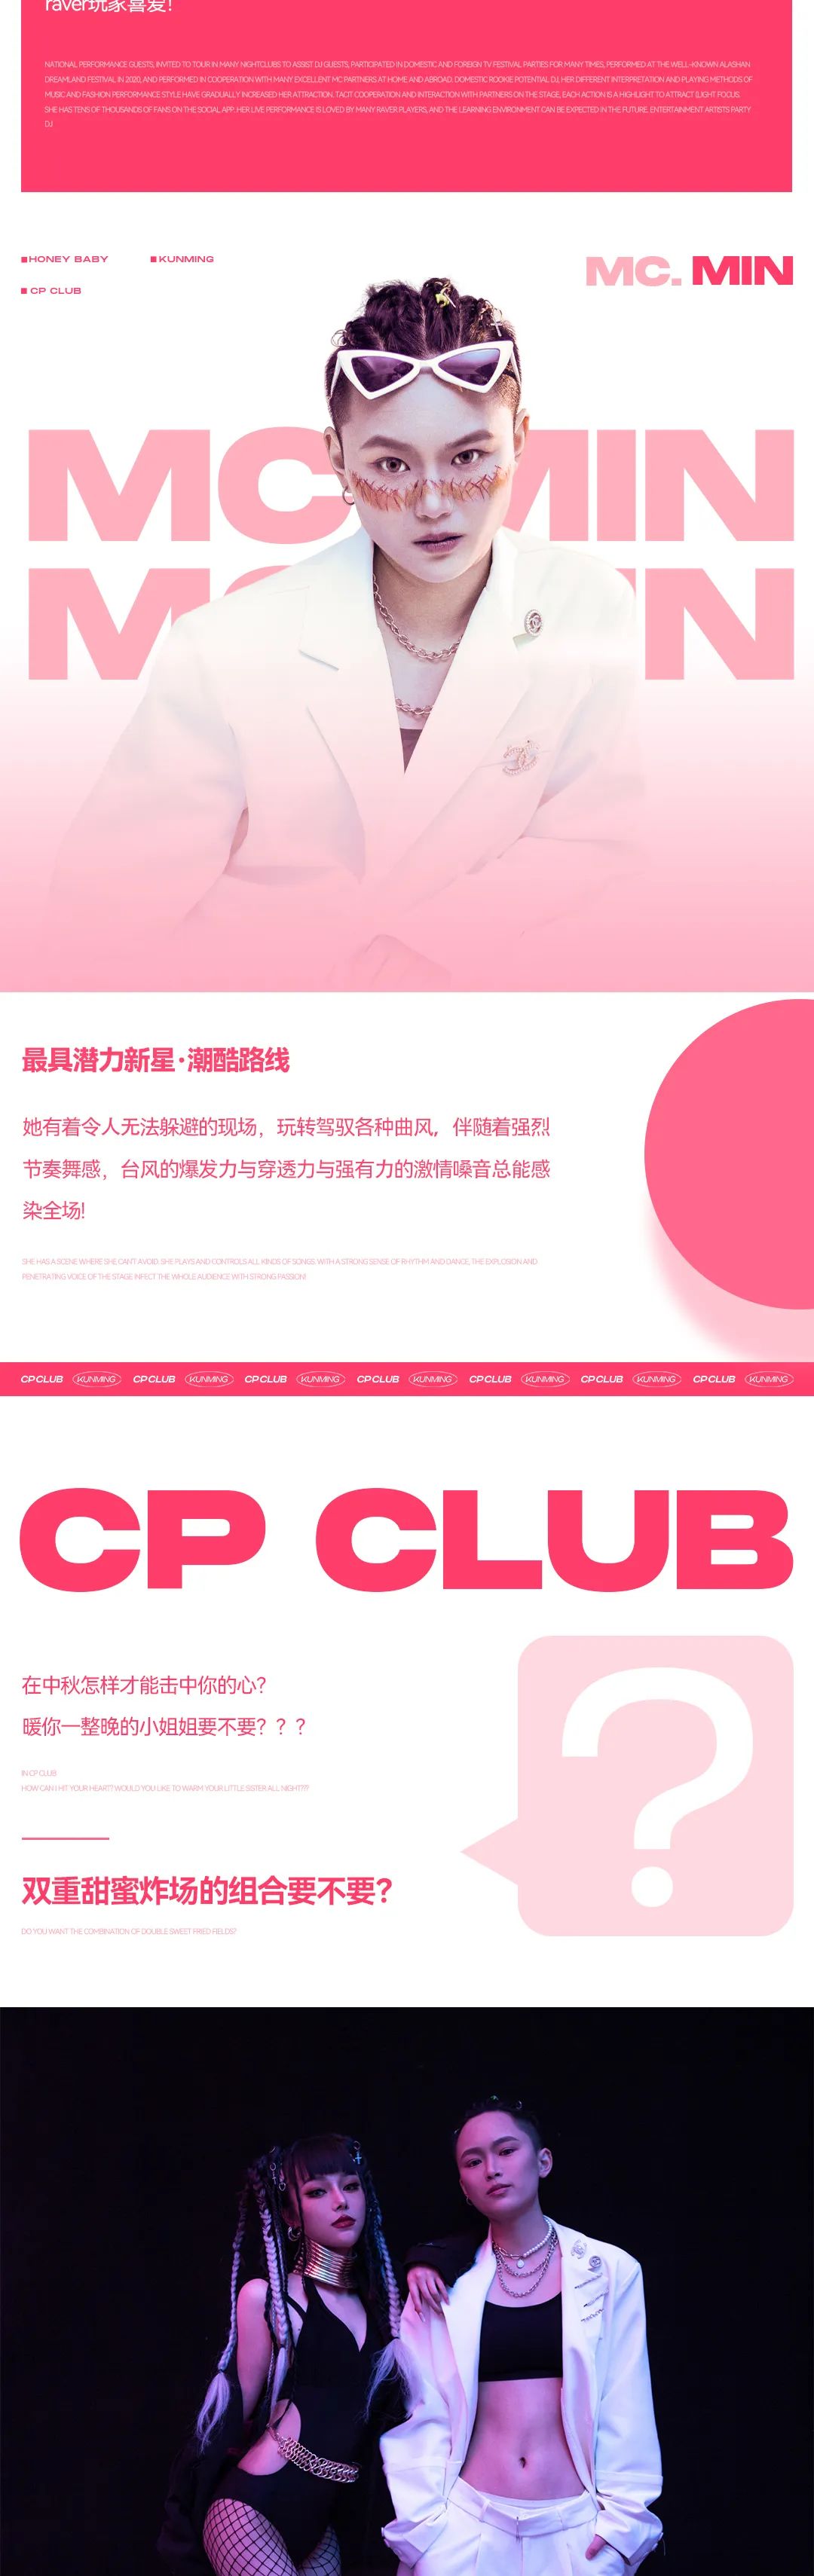 CP CLUB | 叮~您的中秋攻略已送达，请注意查收！-呈贡CP酒吧/CP CLUB